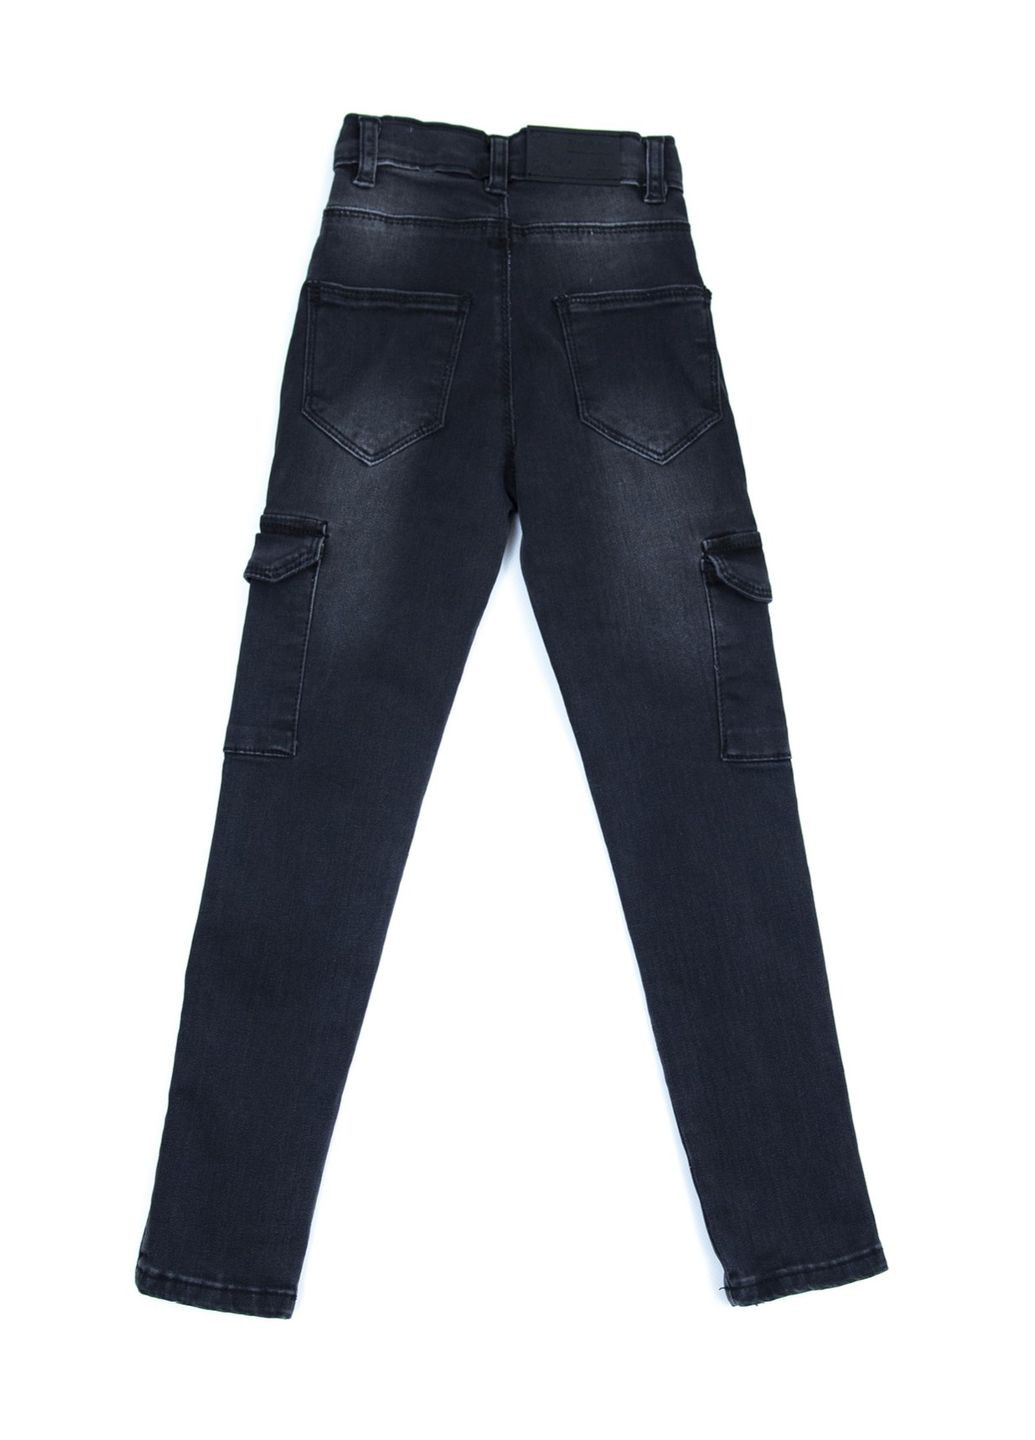 Серые демисезонные зауженные джинсы для девочек зауженные серые Altun